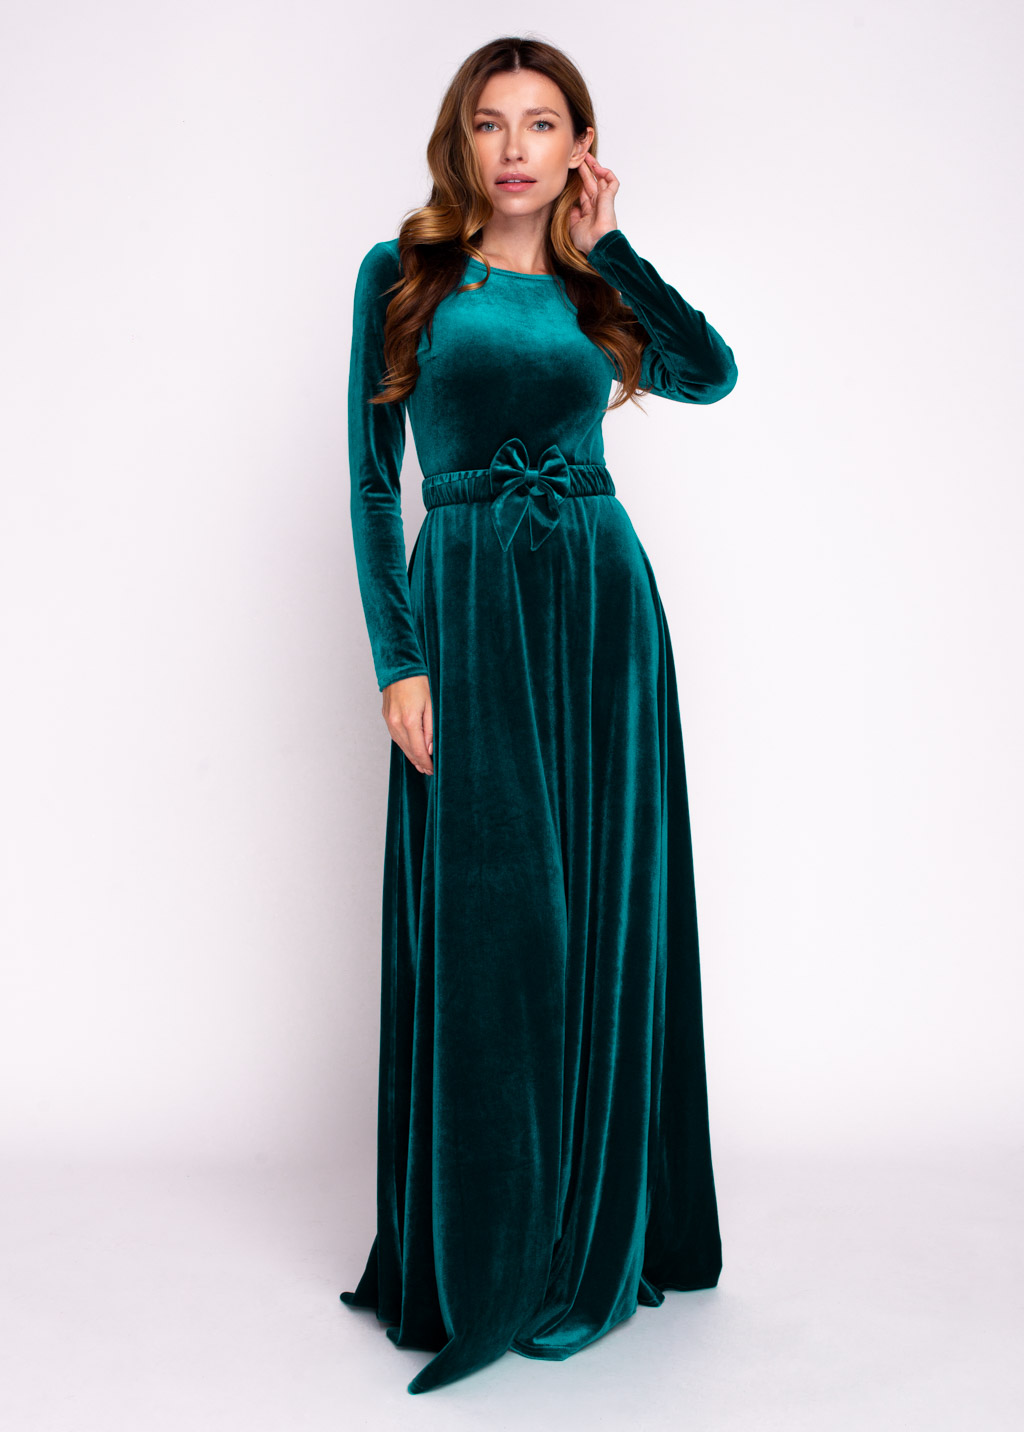 Teal green velvet long dress with belt